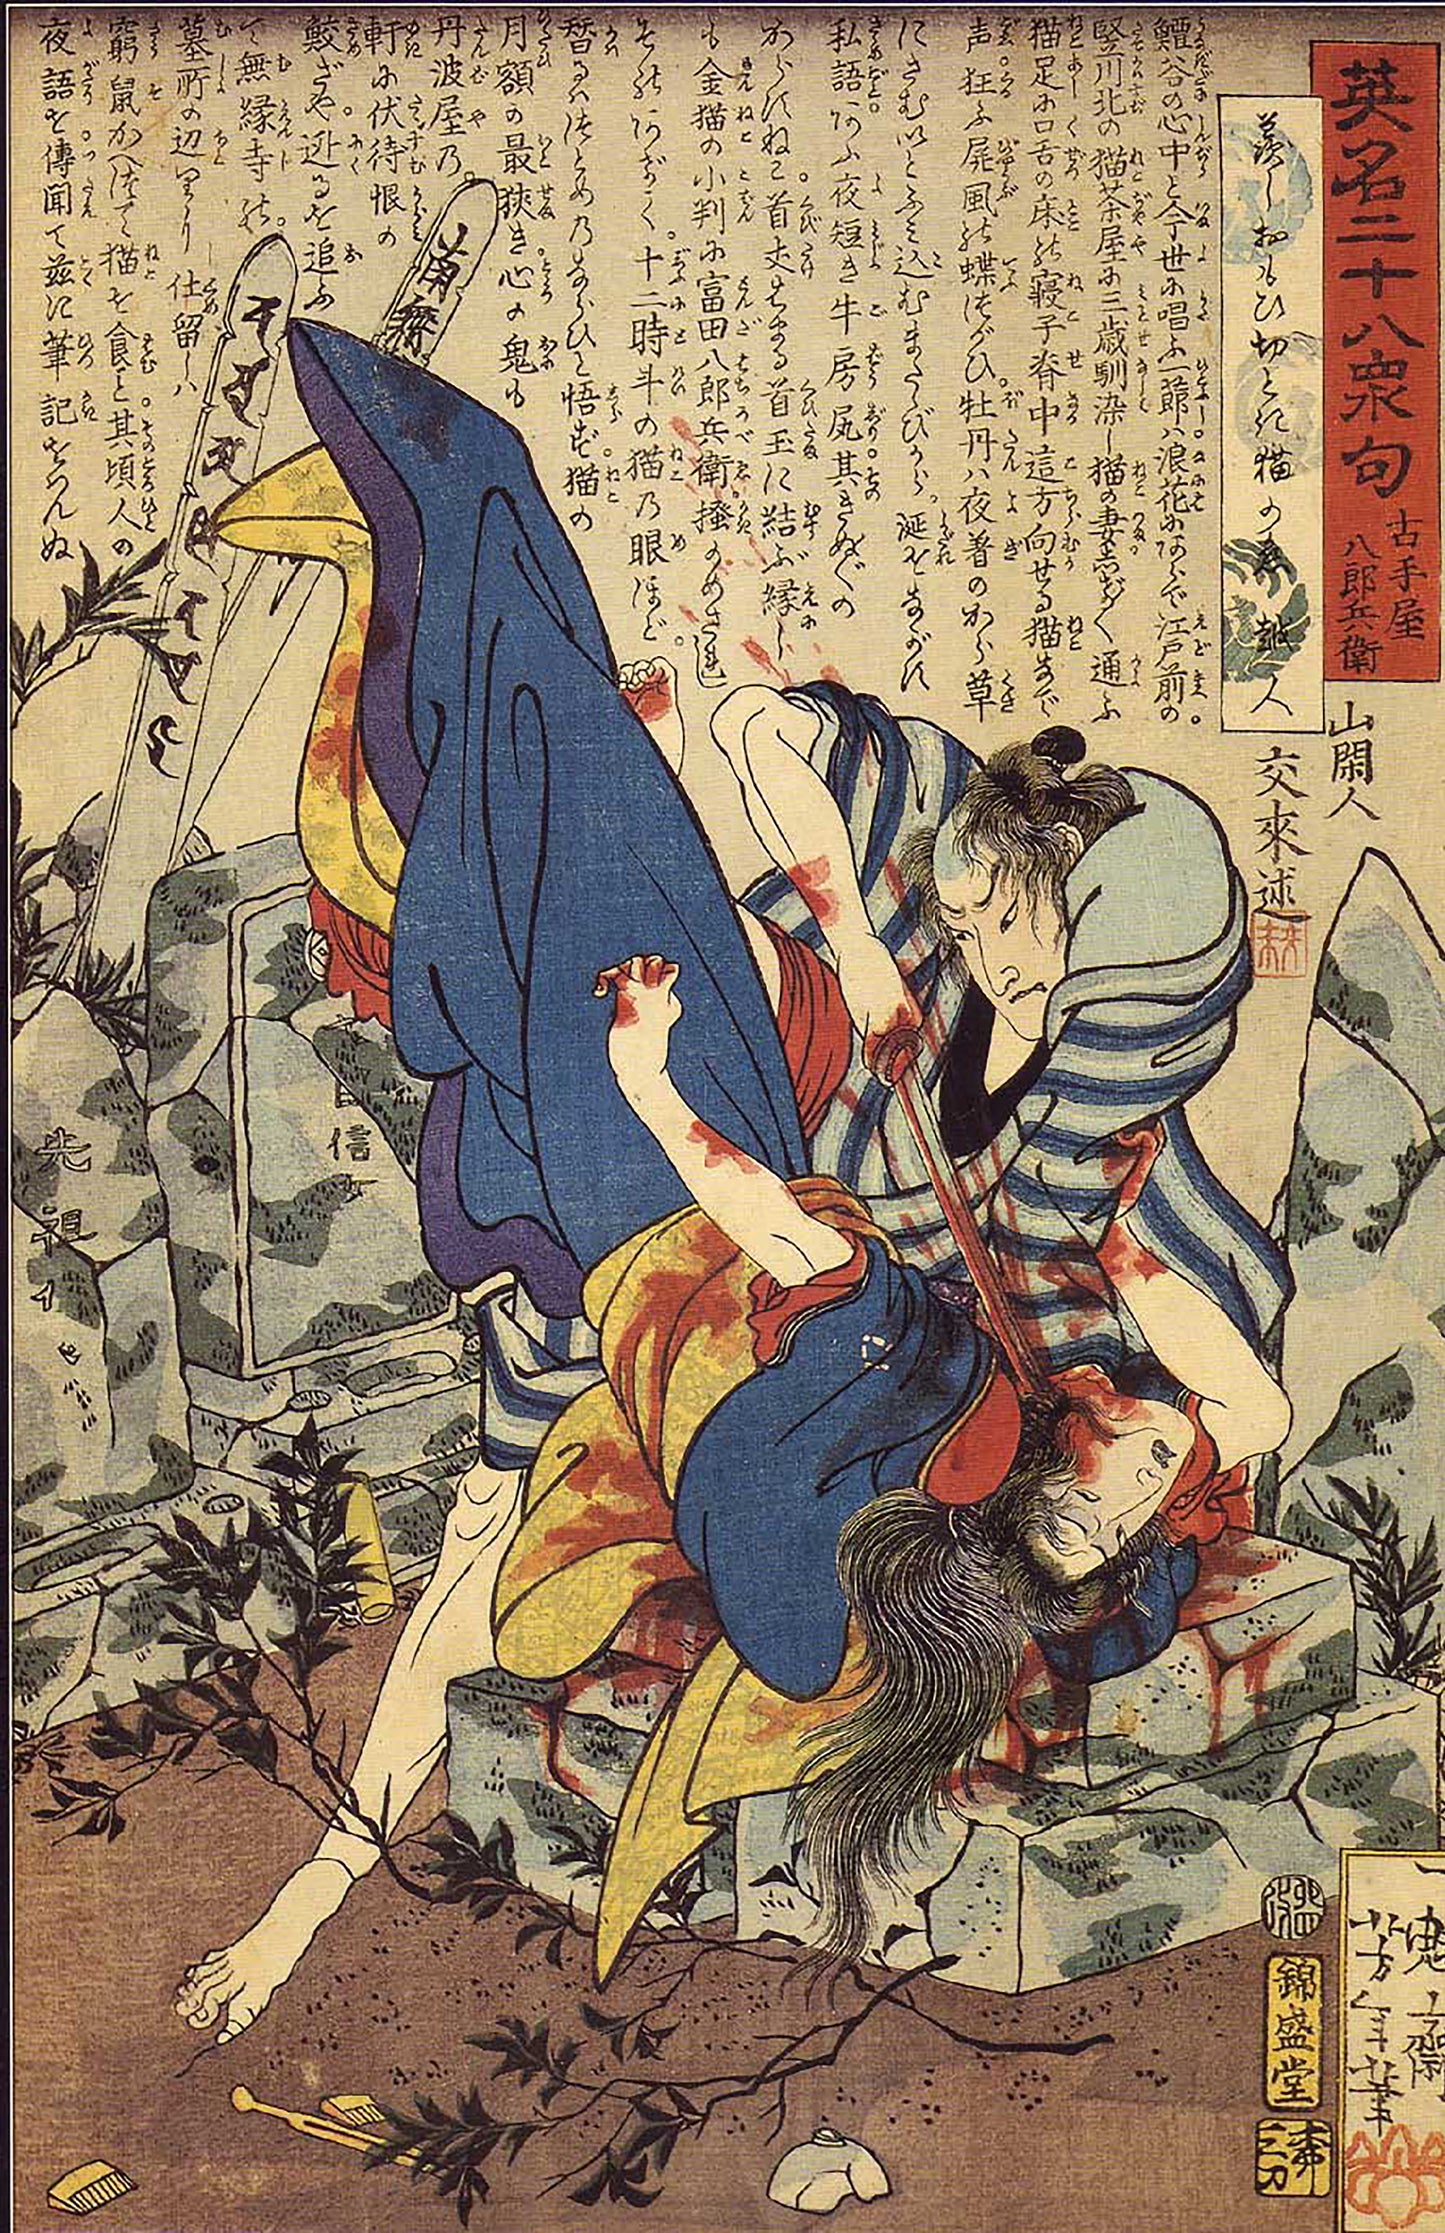 Yoshitoshi - Furuteya Hachirōbei murdering a woman in a graveyard